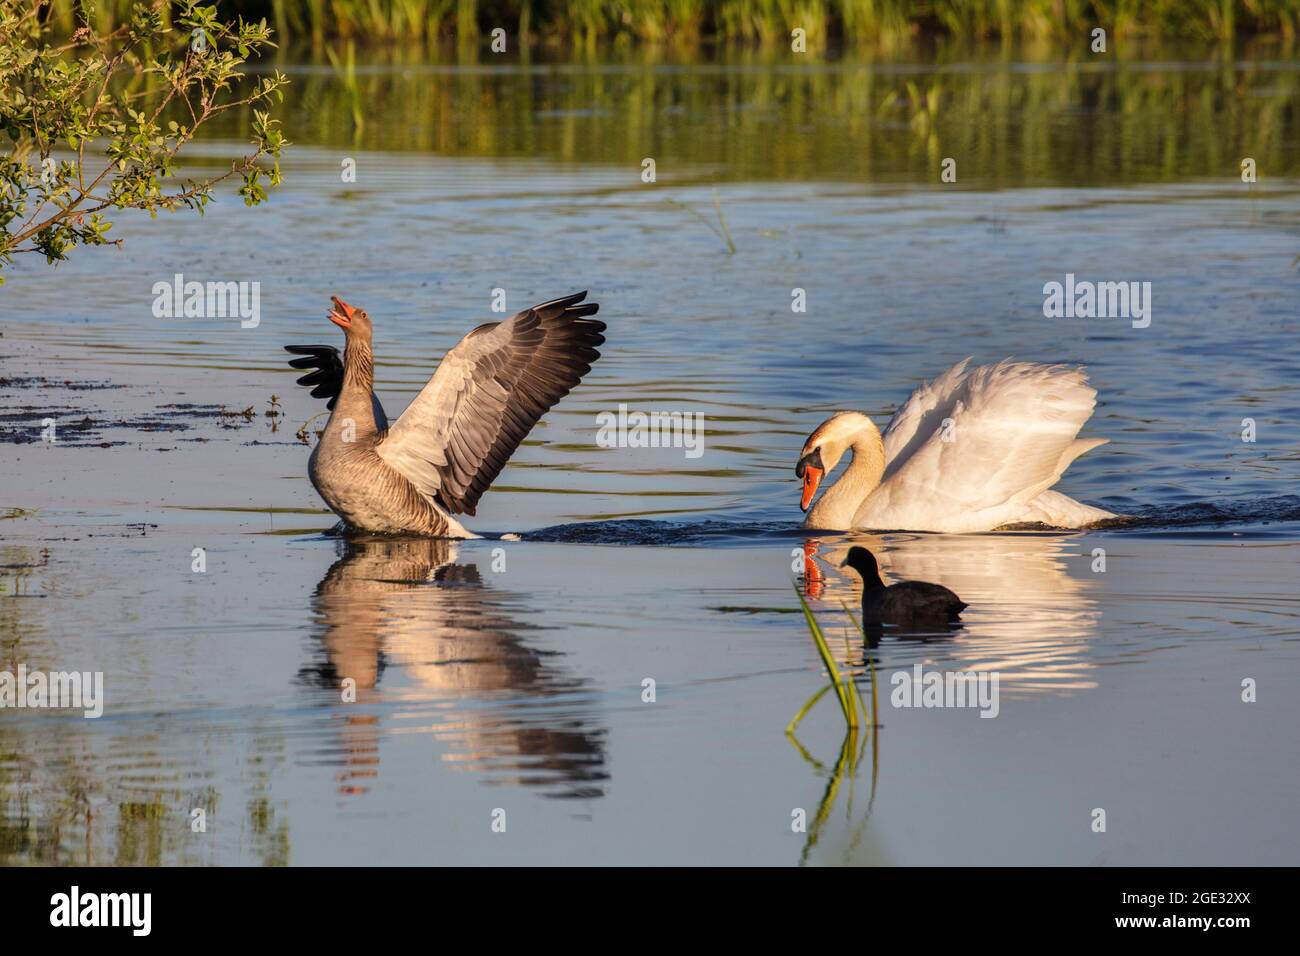 Holanda, Naarden, Naardermeer. Mute cisne persiguiendo a Graylag Goose de su territorio. Foto de stock